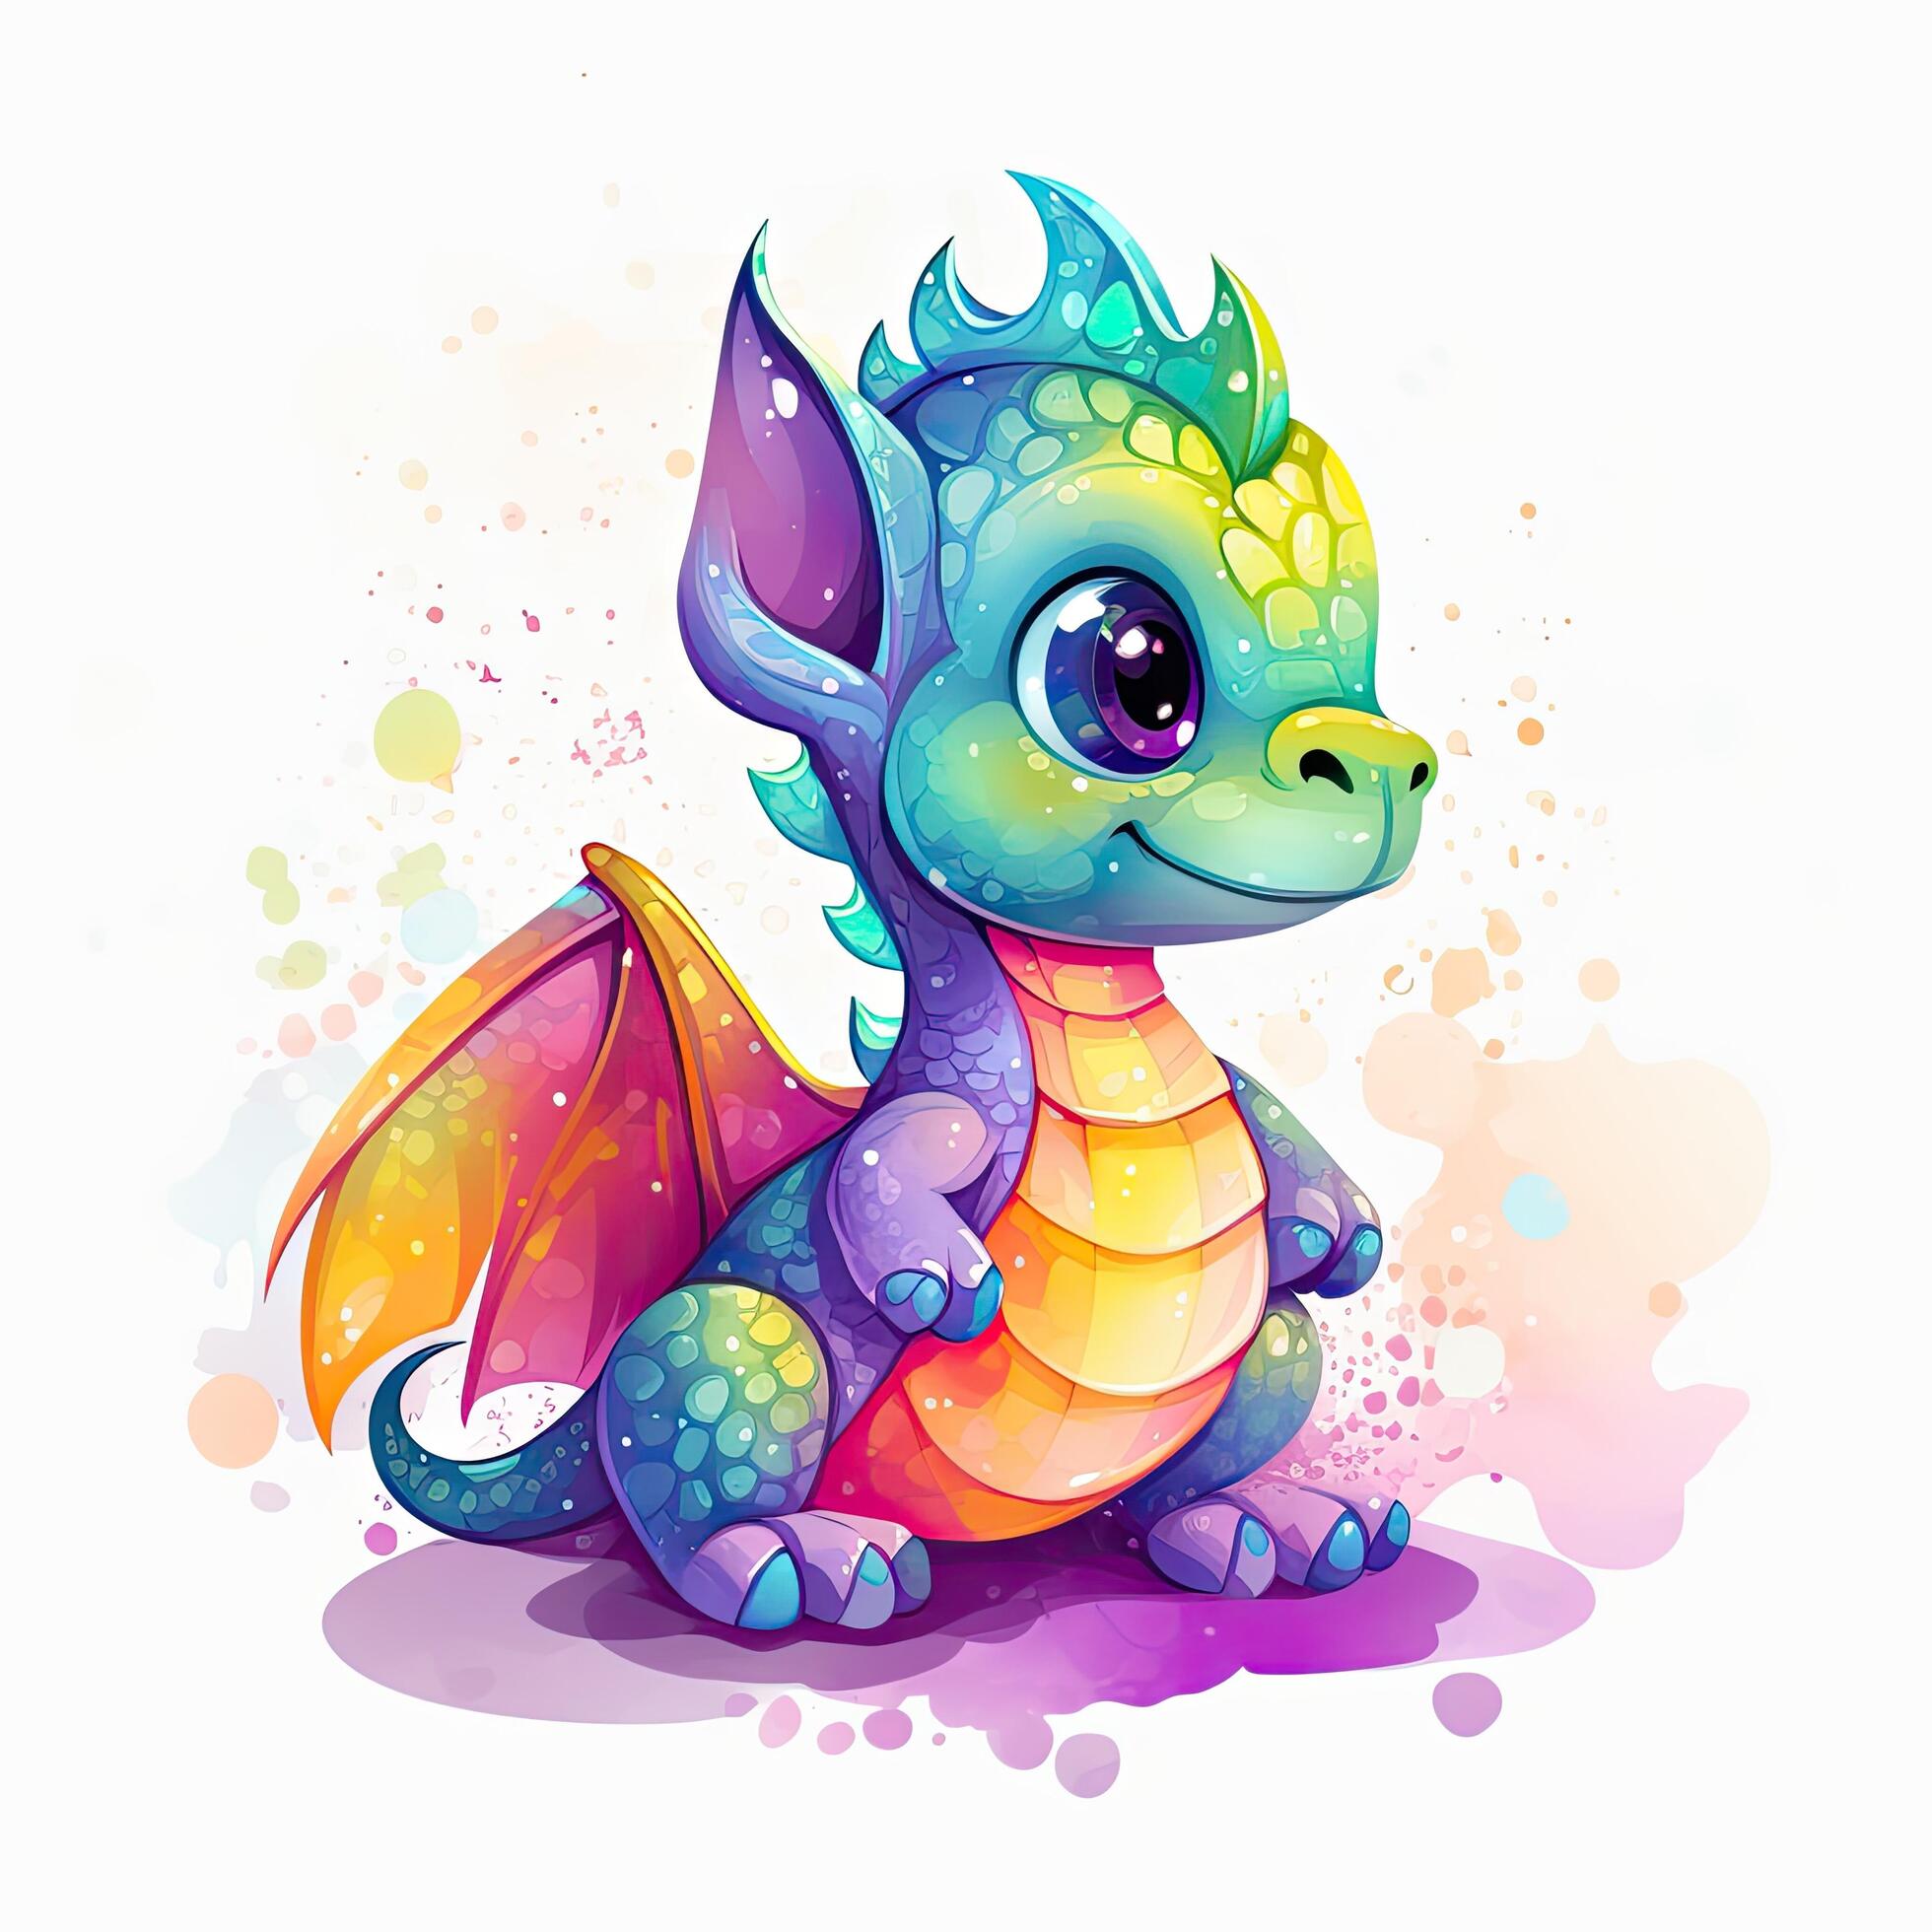 Cute Dragon Pictures | Design Bundles